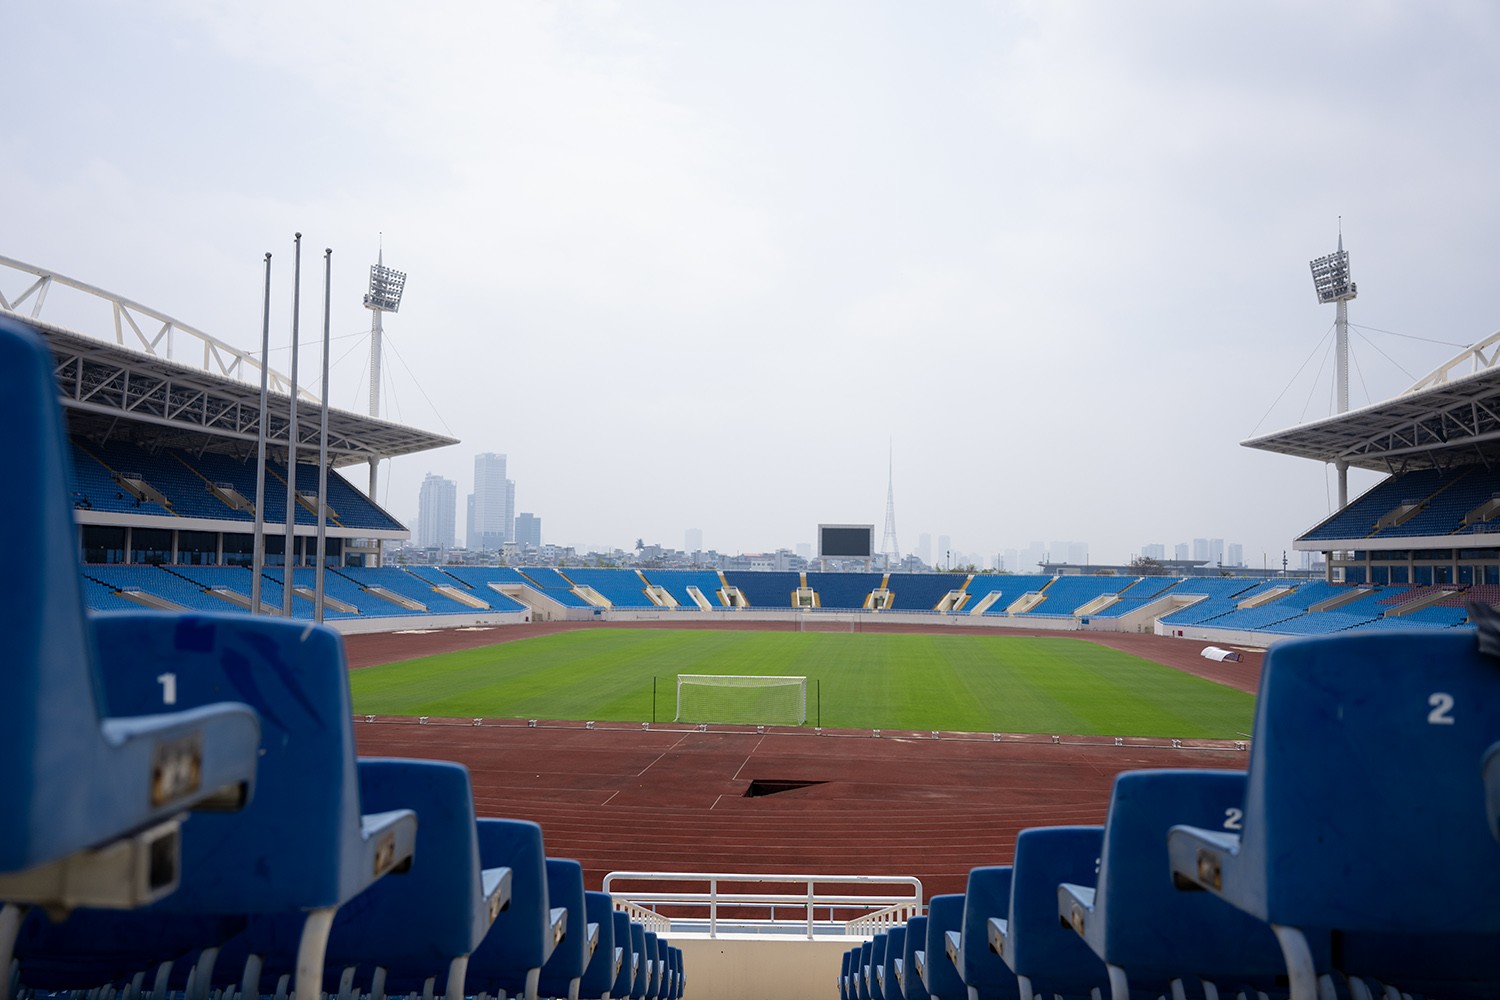  Được biết, trong ngày hôm nay, đoàn công tác của Liên đoàn Bóng đá châu Á (AFC) sẽ tới sân Mỹ Đình để kiểm tra công tác tổ chức cũng như trang thiết bị trước thềm trận đấu giữa Việt Nam và Indonesia.